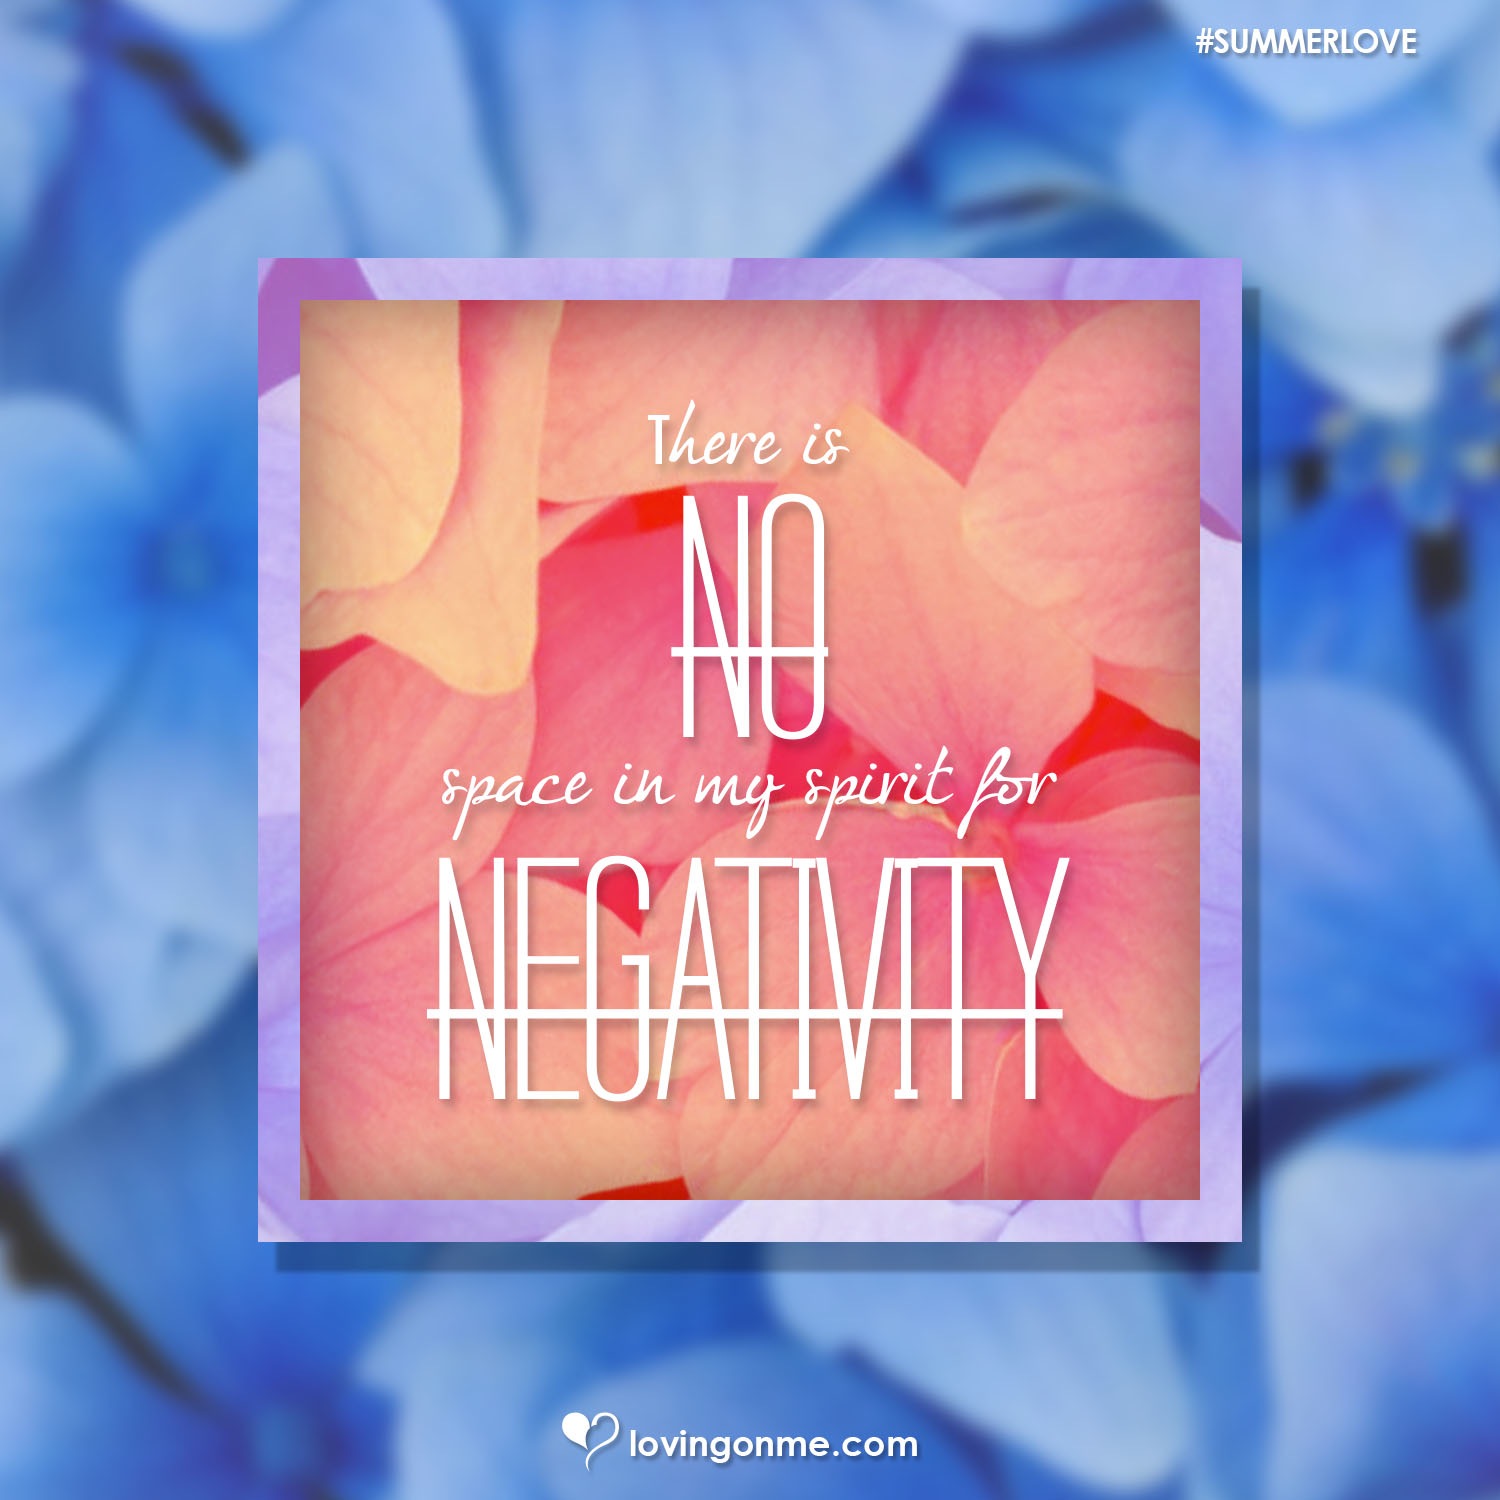 No More Negativity